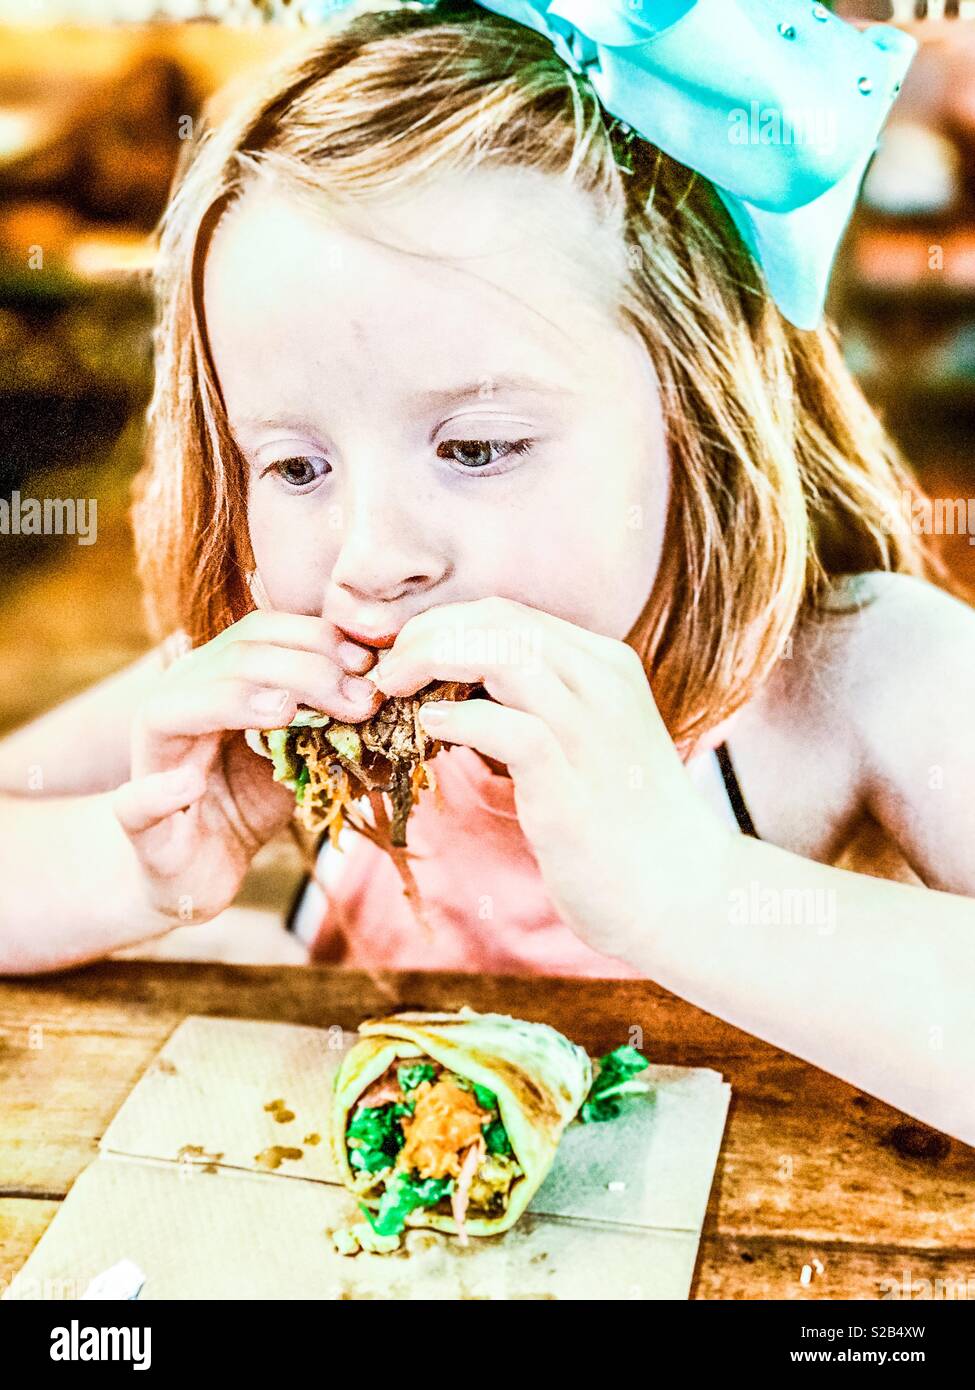 Giovani 7 anno vecchia ragazza a mangiare una tirata la carne di maiale si avvolgono in un ristorante Foto Stock